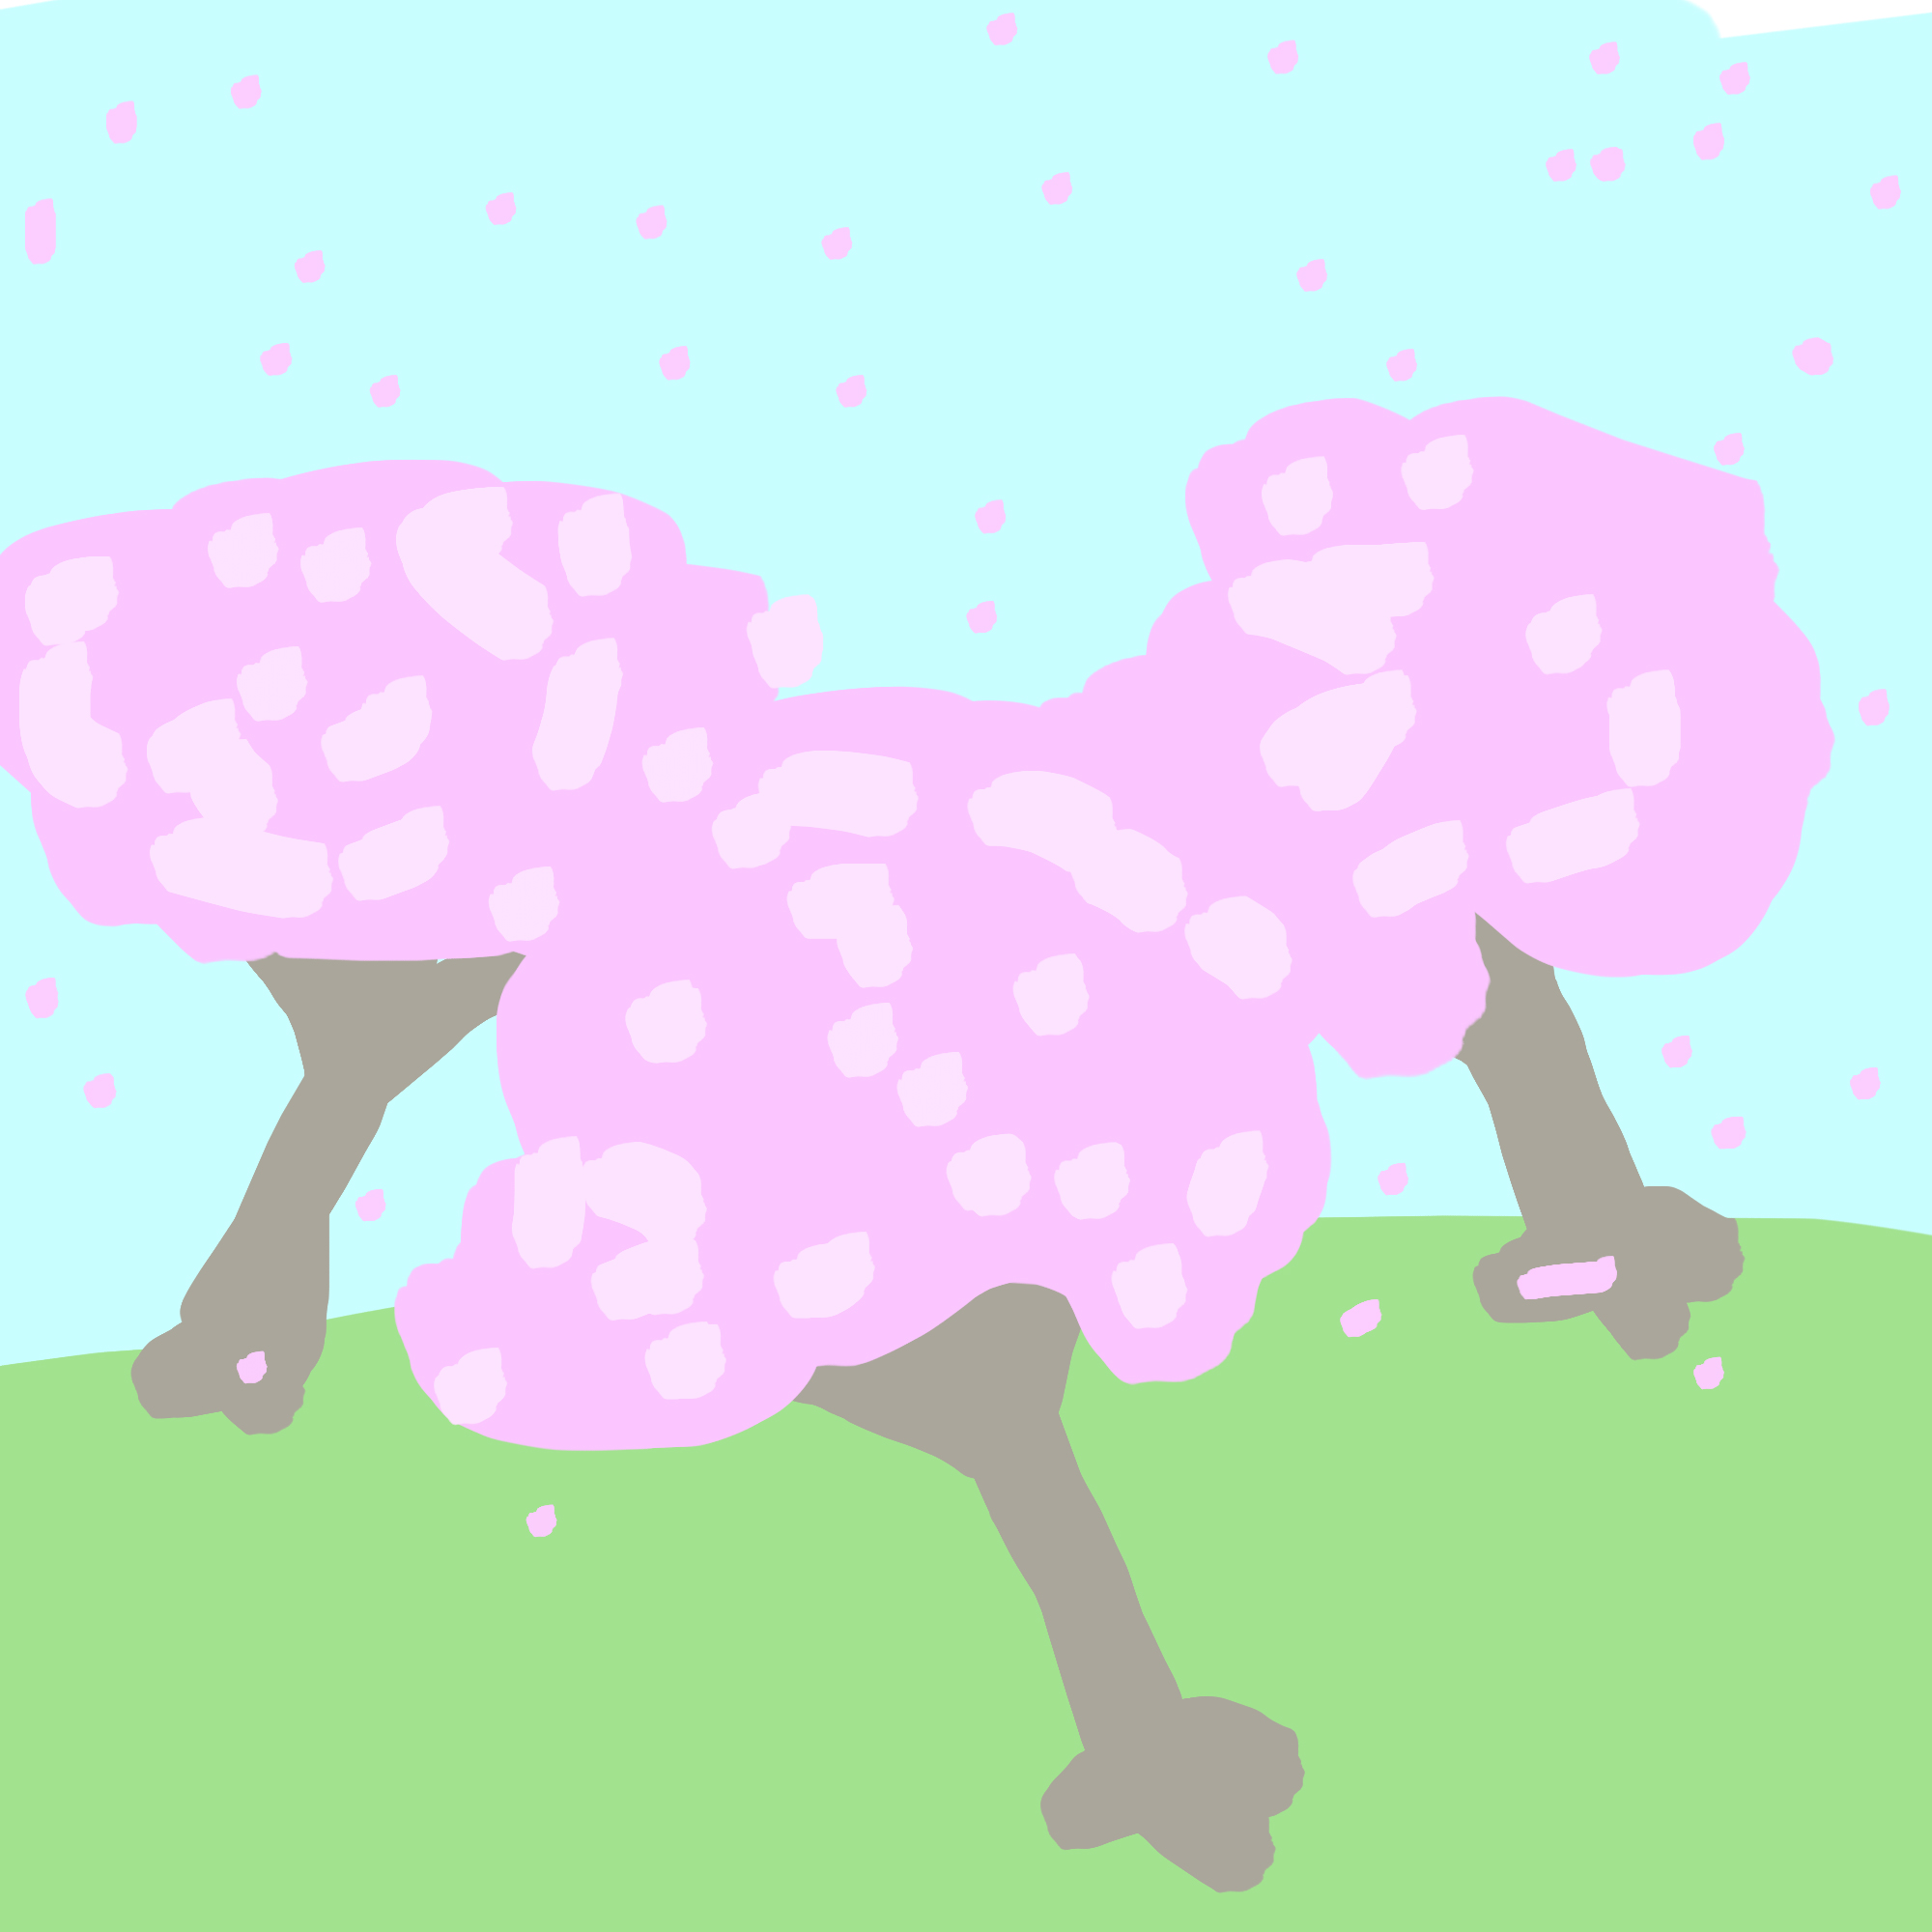 Trois cerisiers en fleurs au sommet d'une colline à l'herbe claire répandant leurs pétales rose vif dans le vent.